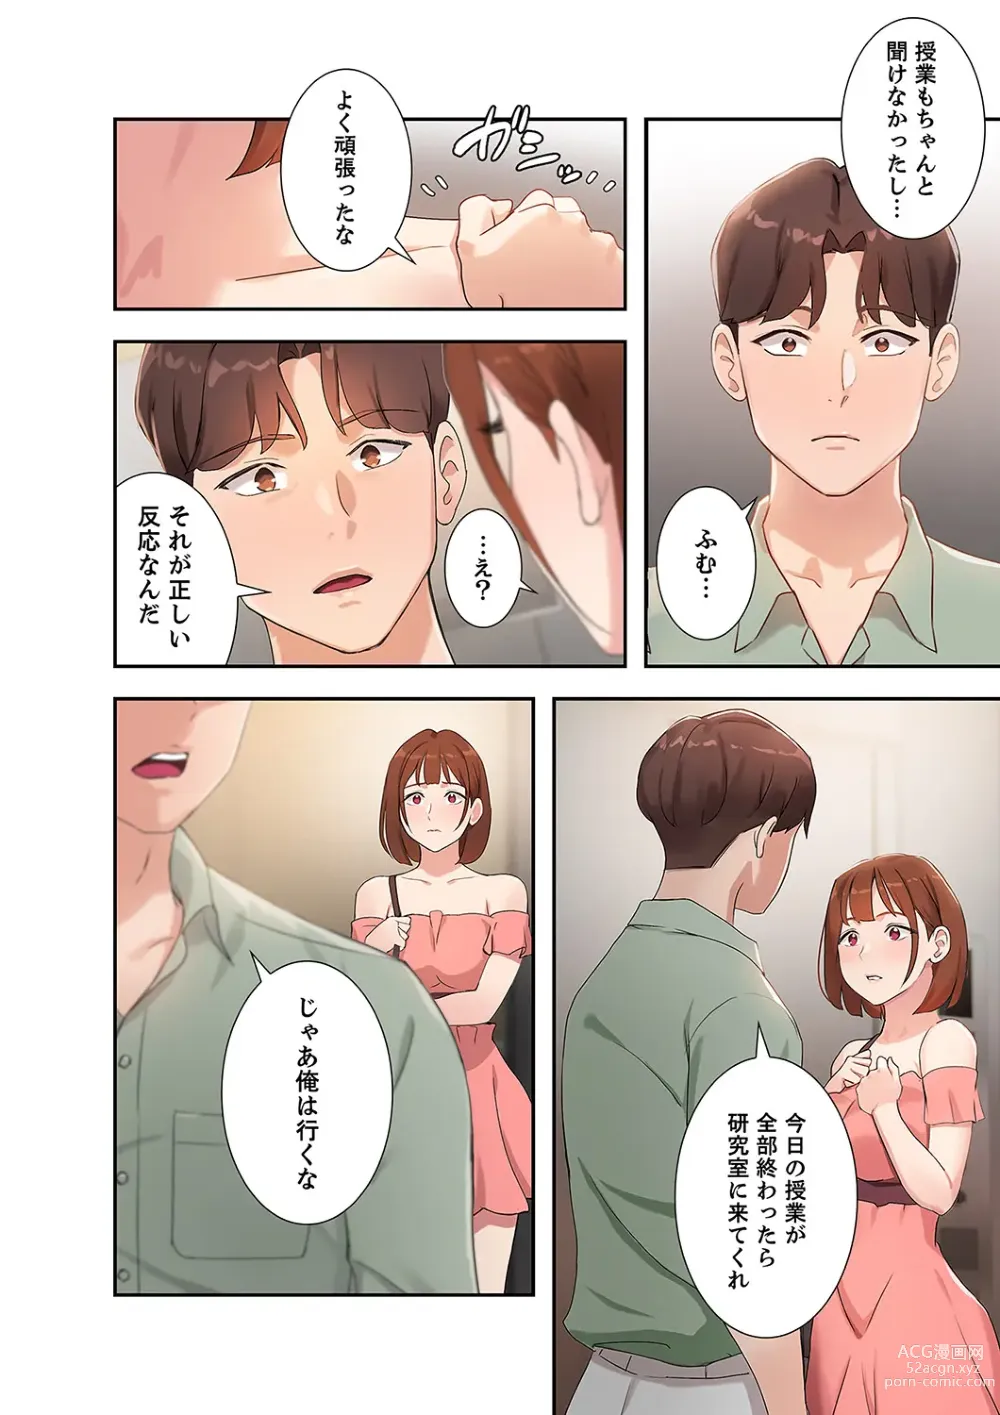 Page 142 of manga Hatachi 01